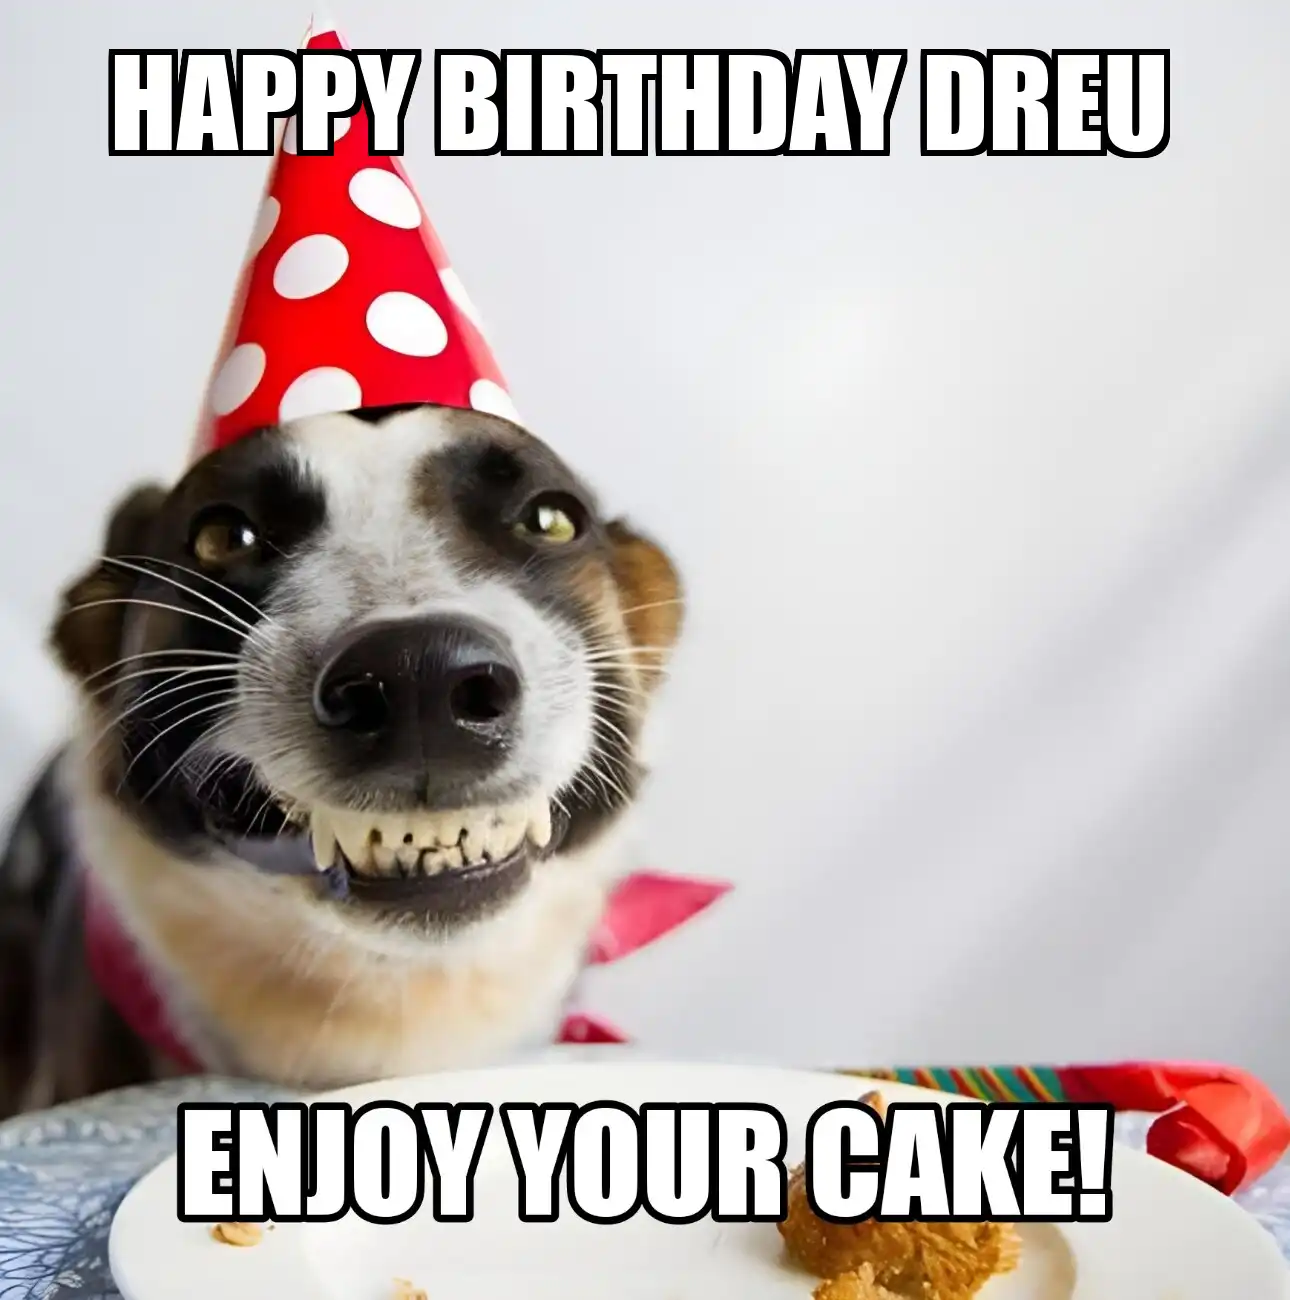 Happy Birthday Dreu Enjoy Your Cake Dog Meme